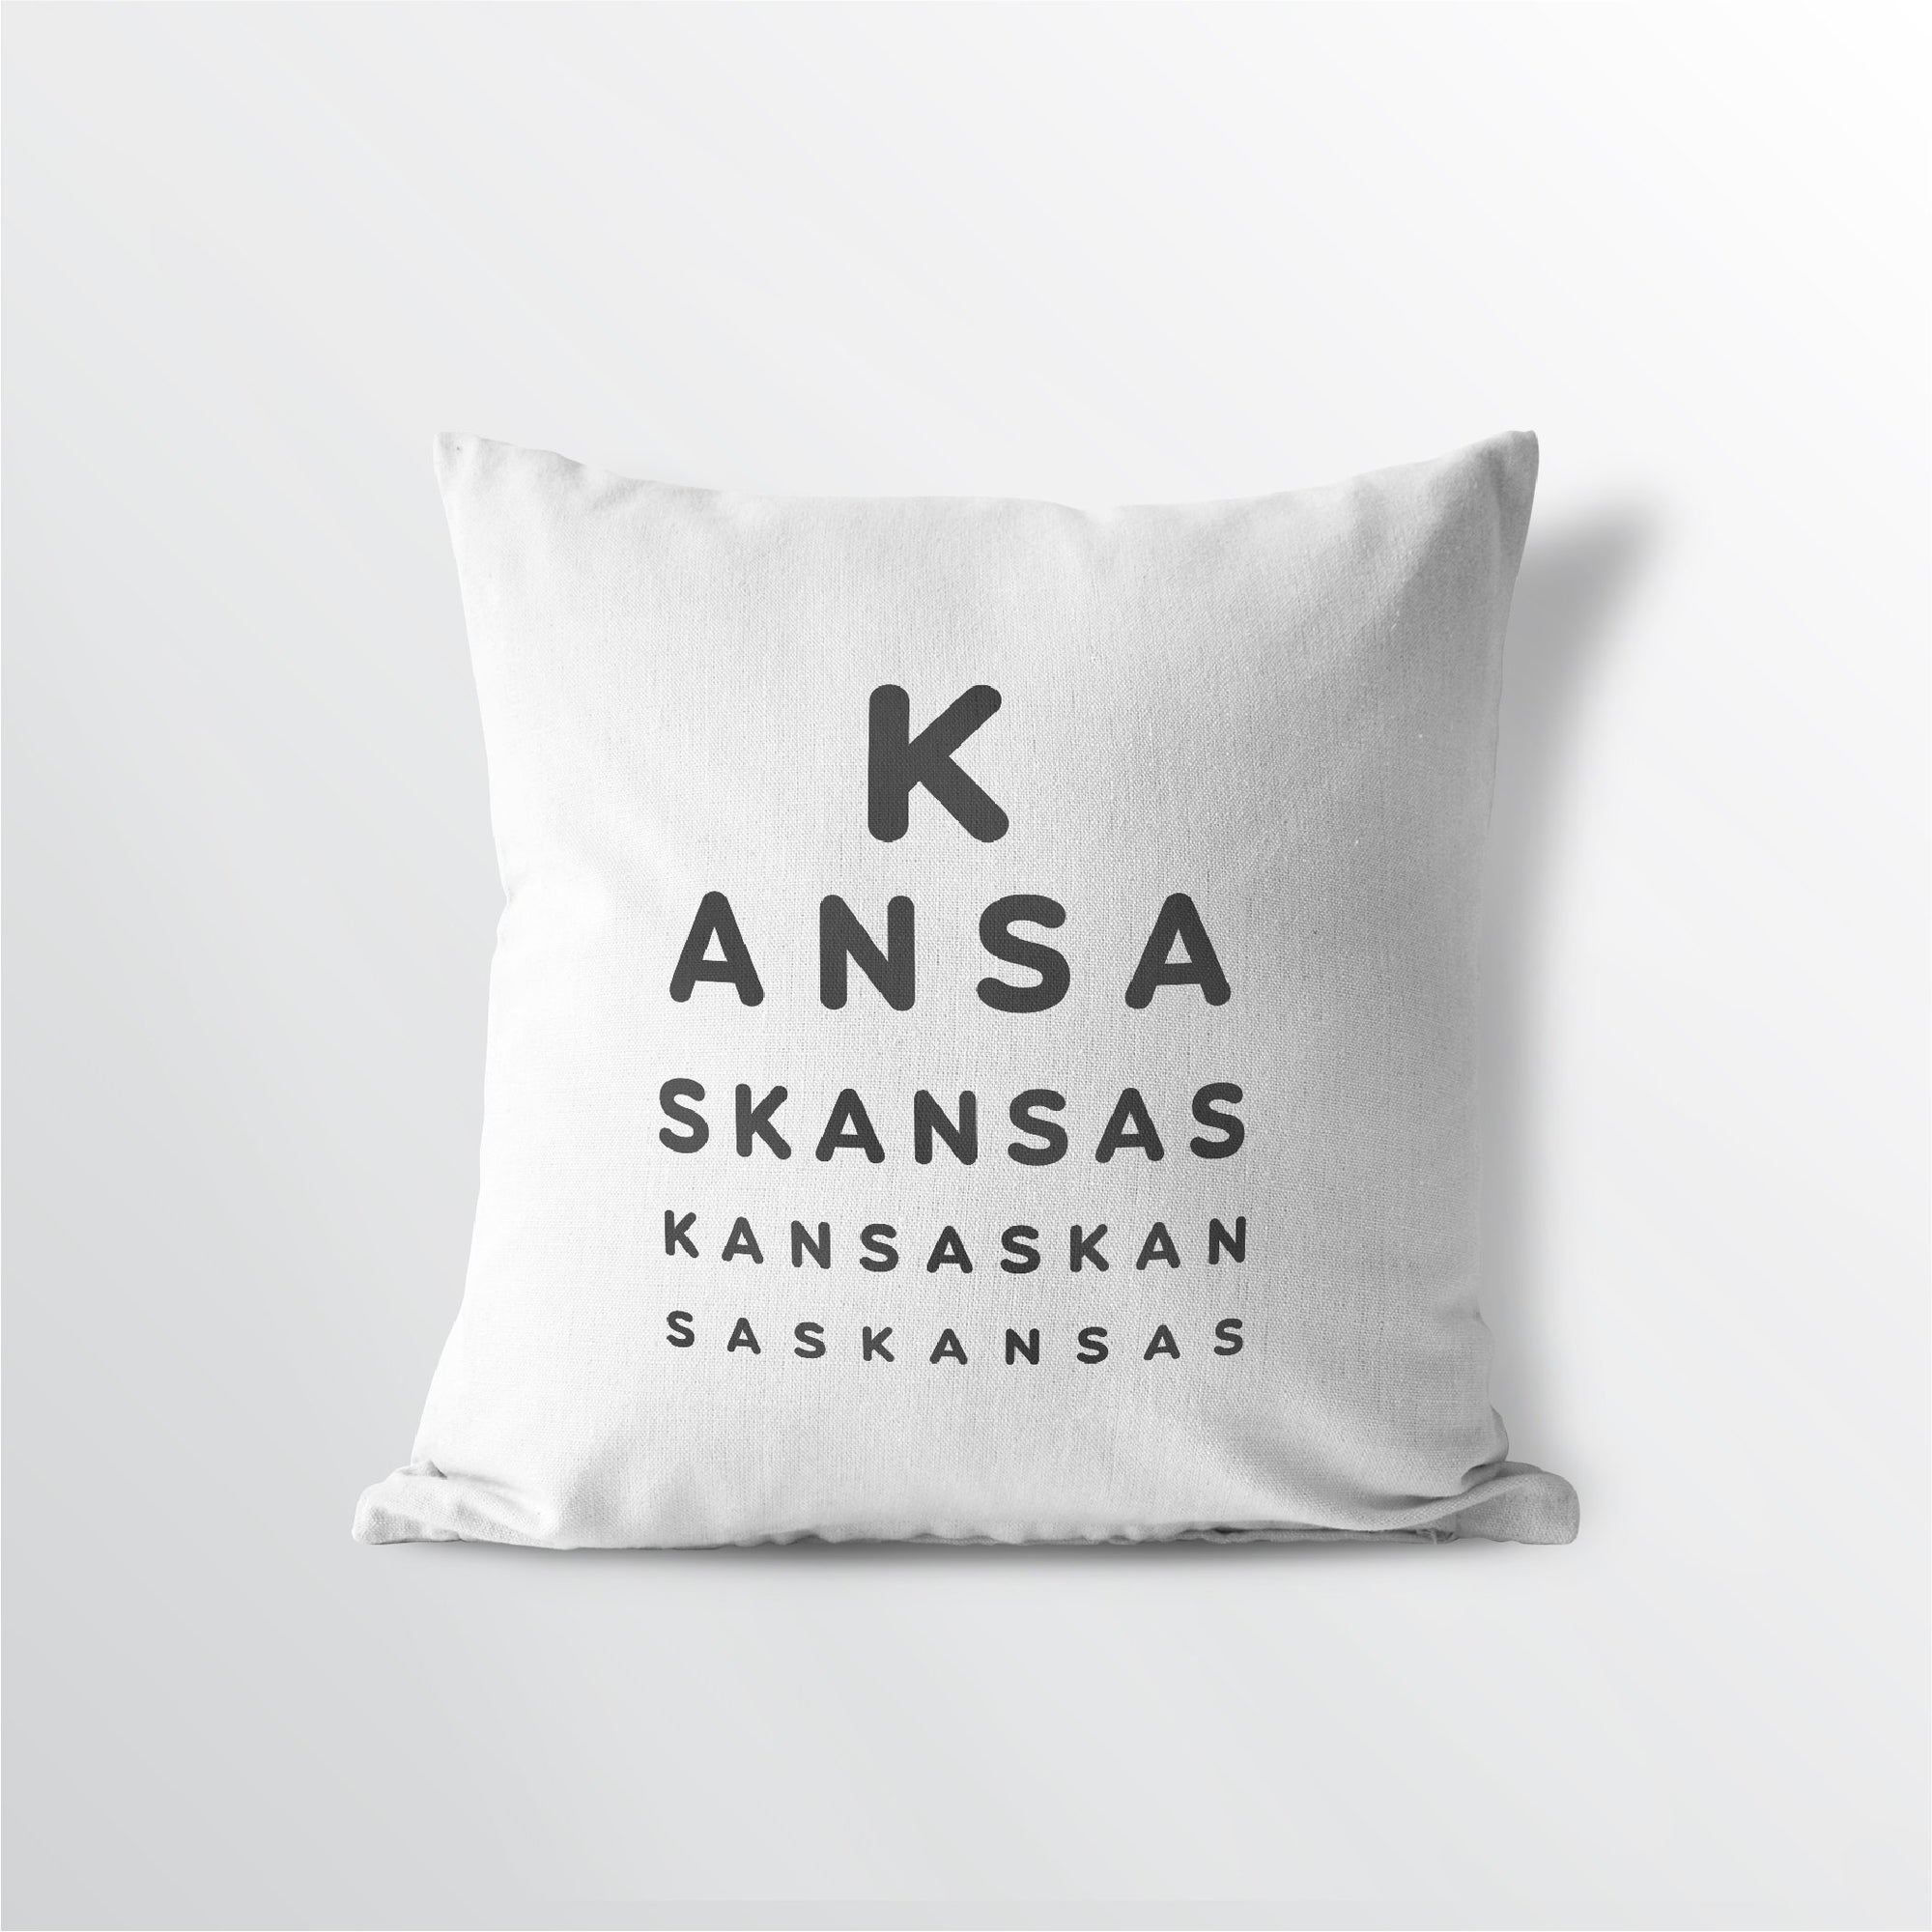 Kansas "Eye Exam" Throw Pillow